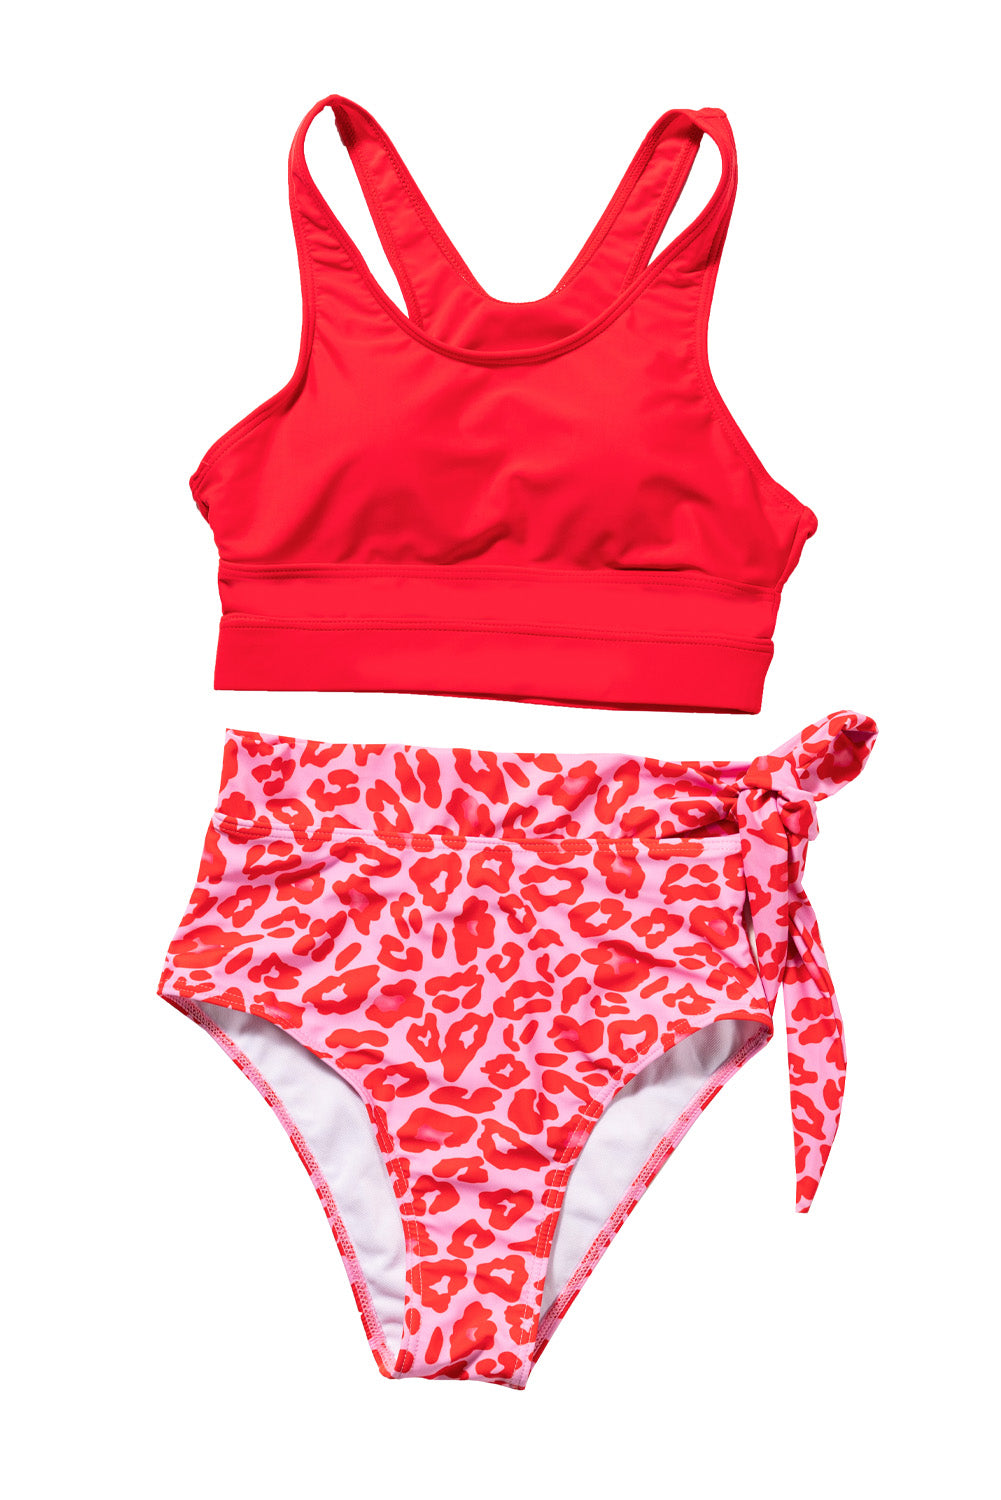 Feuriges rotes, himmelblaues, floral bedrucktes Bikini-Set mit hoher Taille und Schnürung